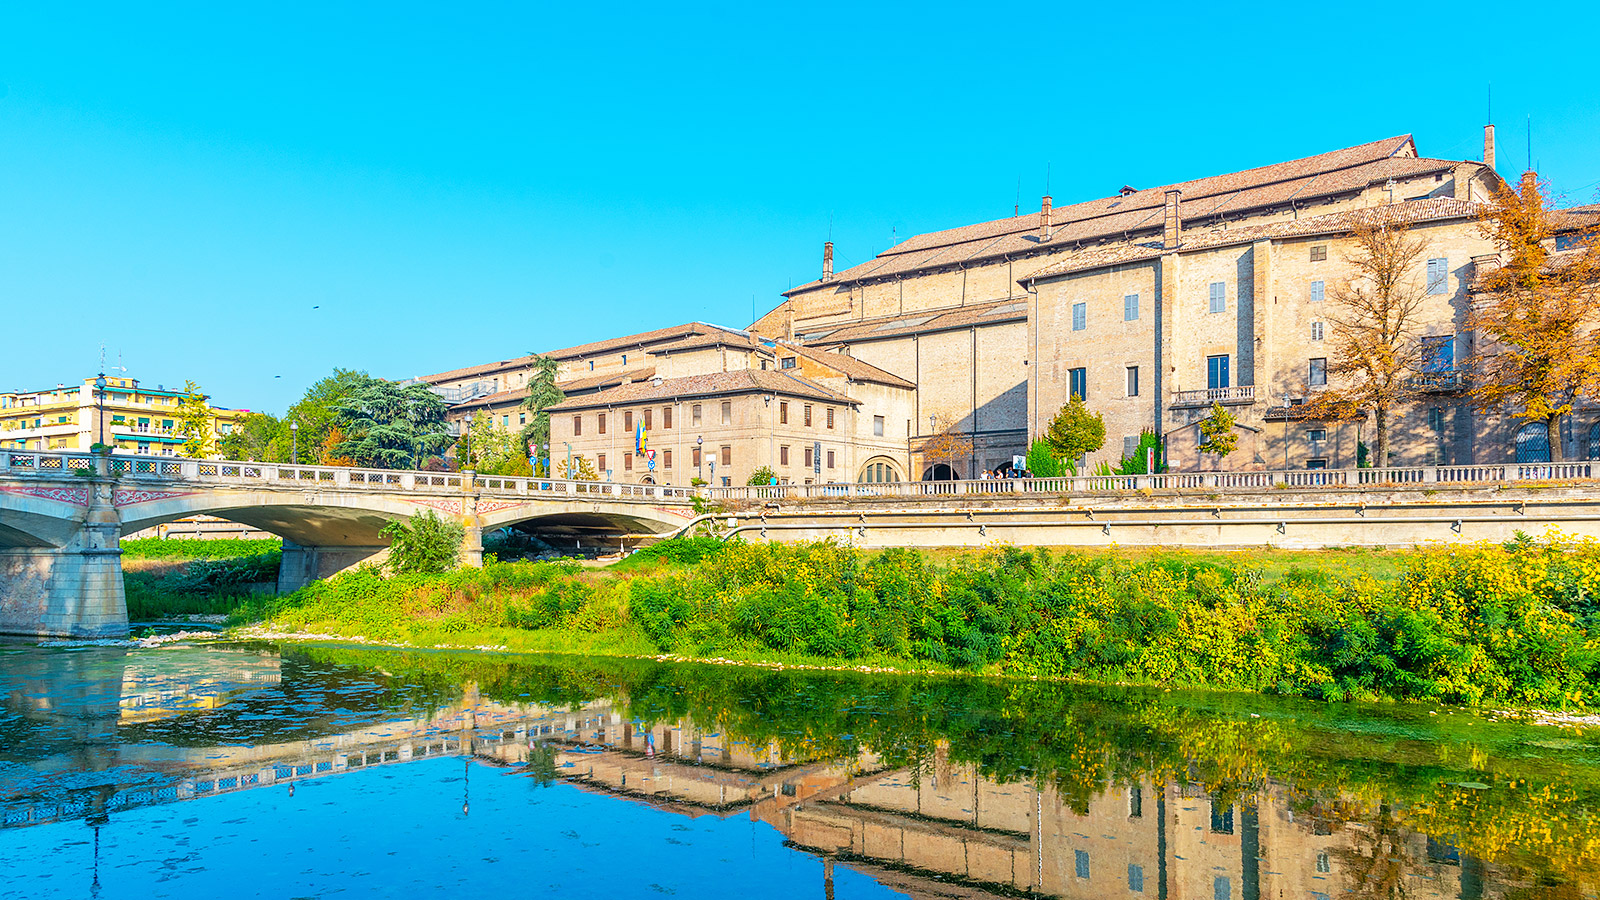 Het Palazzo della Pilotta is een complex in het centrum van Parma met o.a. diverse musea, galerijen en een bibliotheek